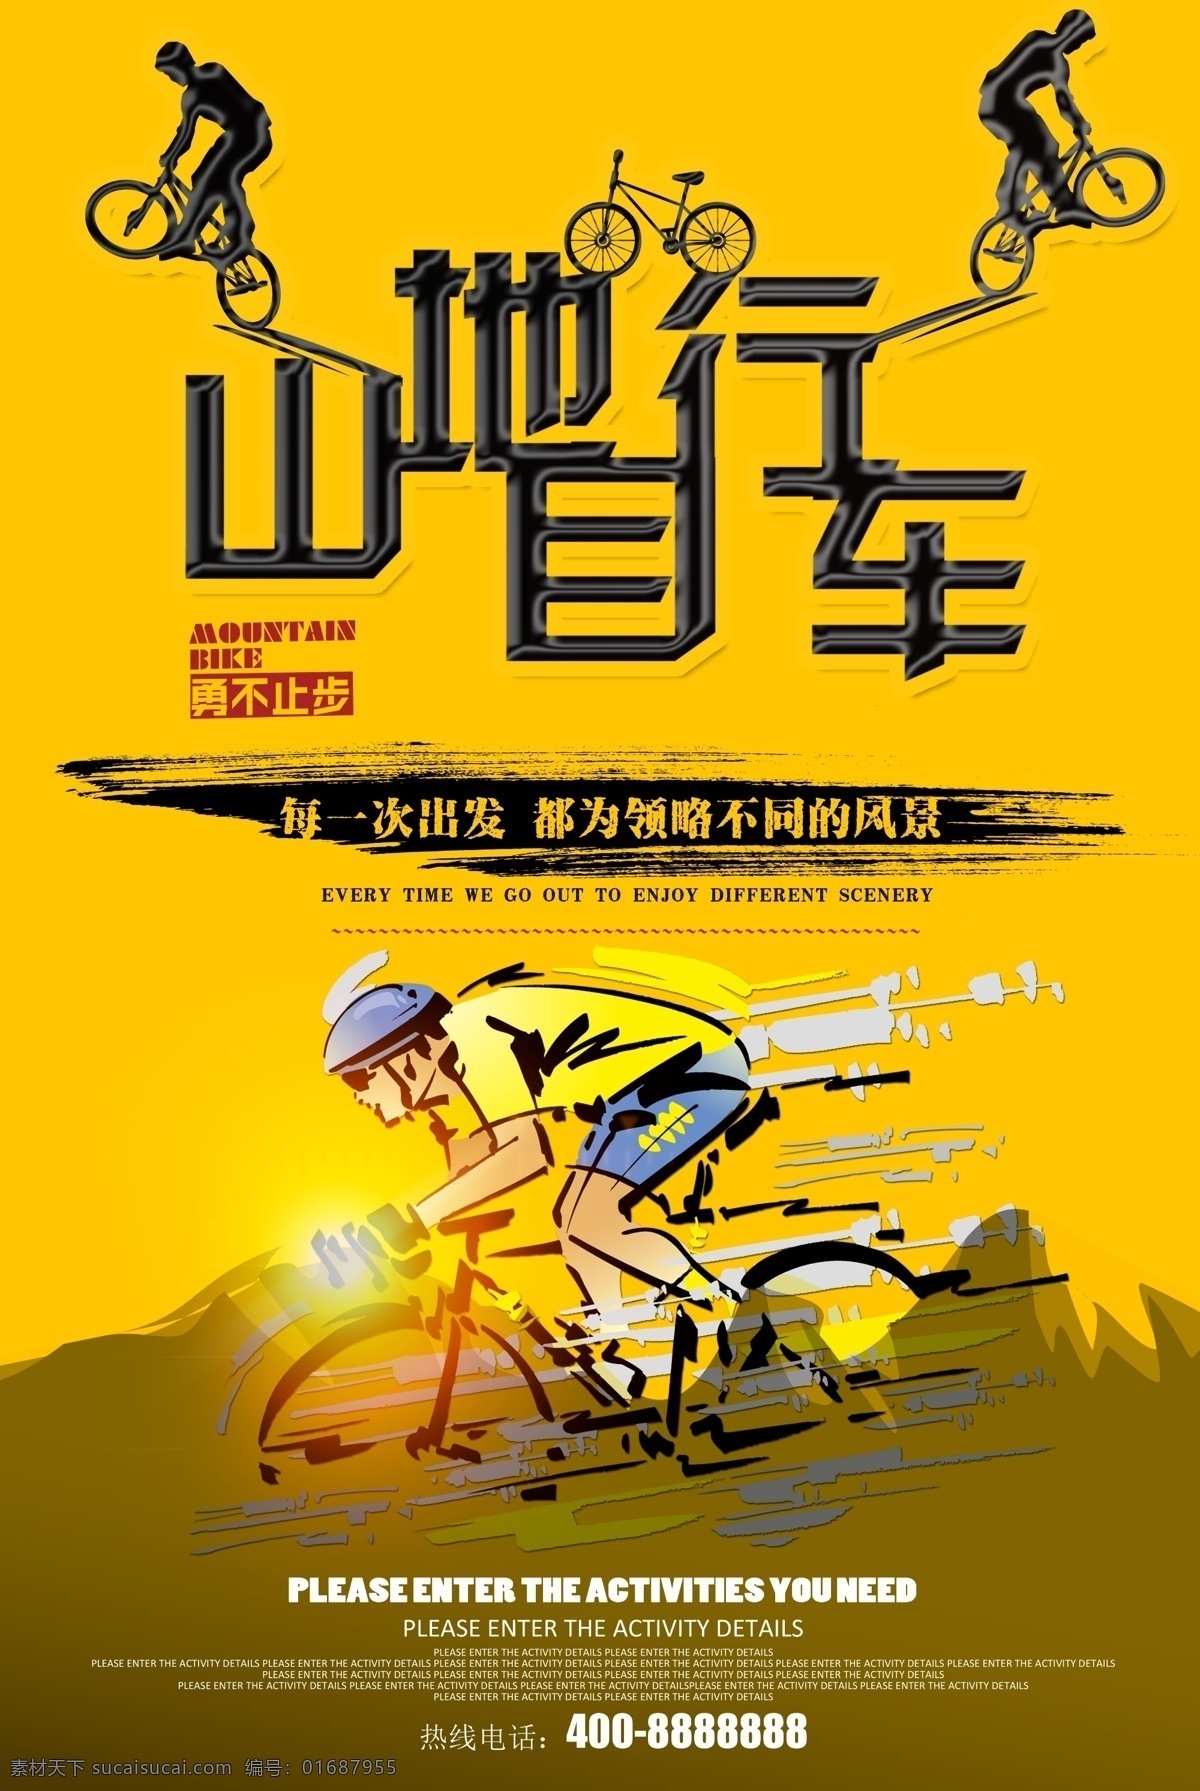 山地 自行车 海报 自行车海报 自行车运动 自行车比赛 自行车赛 自行车休闲 自行车绿色 自行车环保 自行车低碳 公路自行车 山地自行车 自行车设计